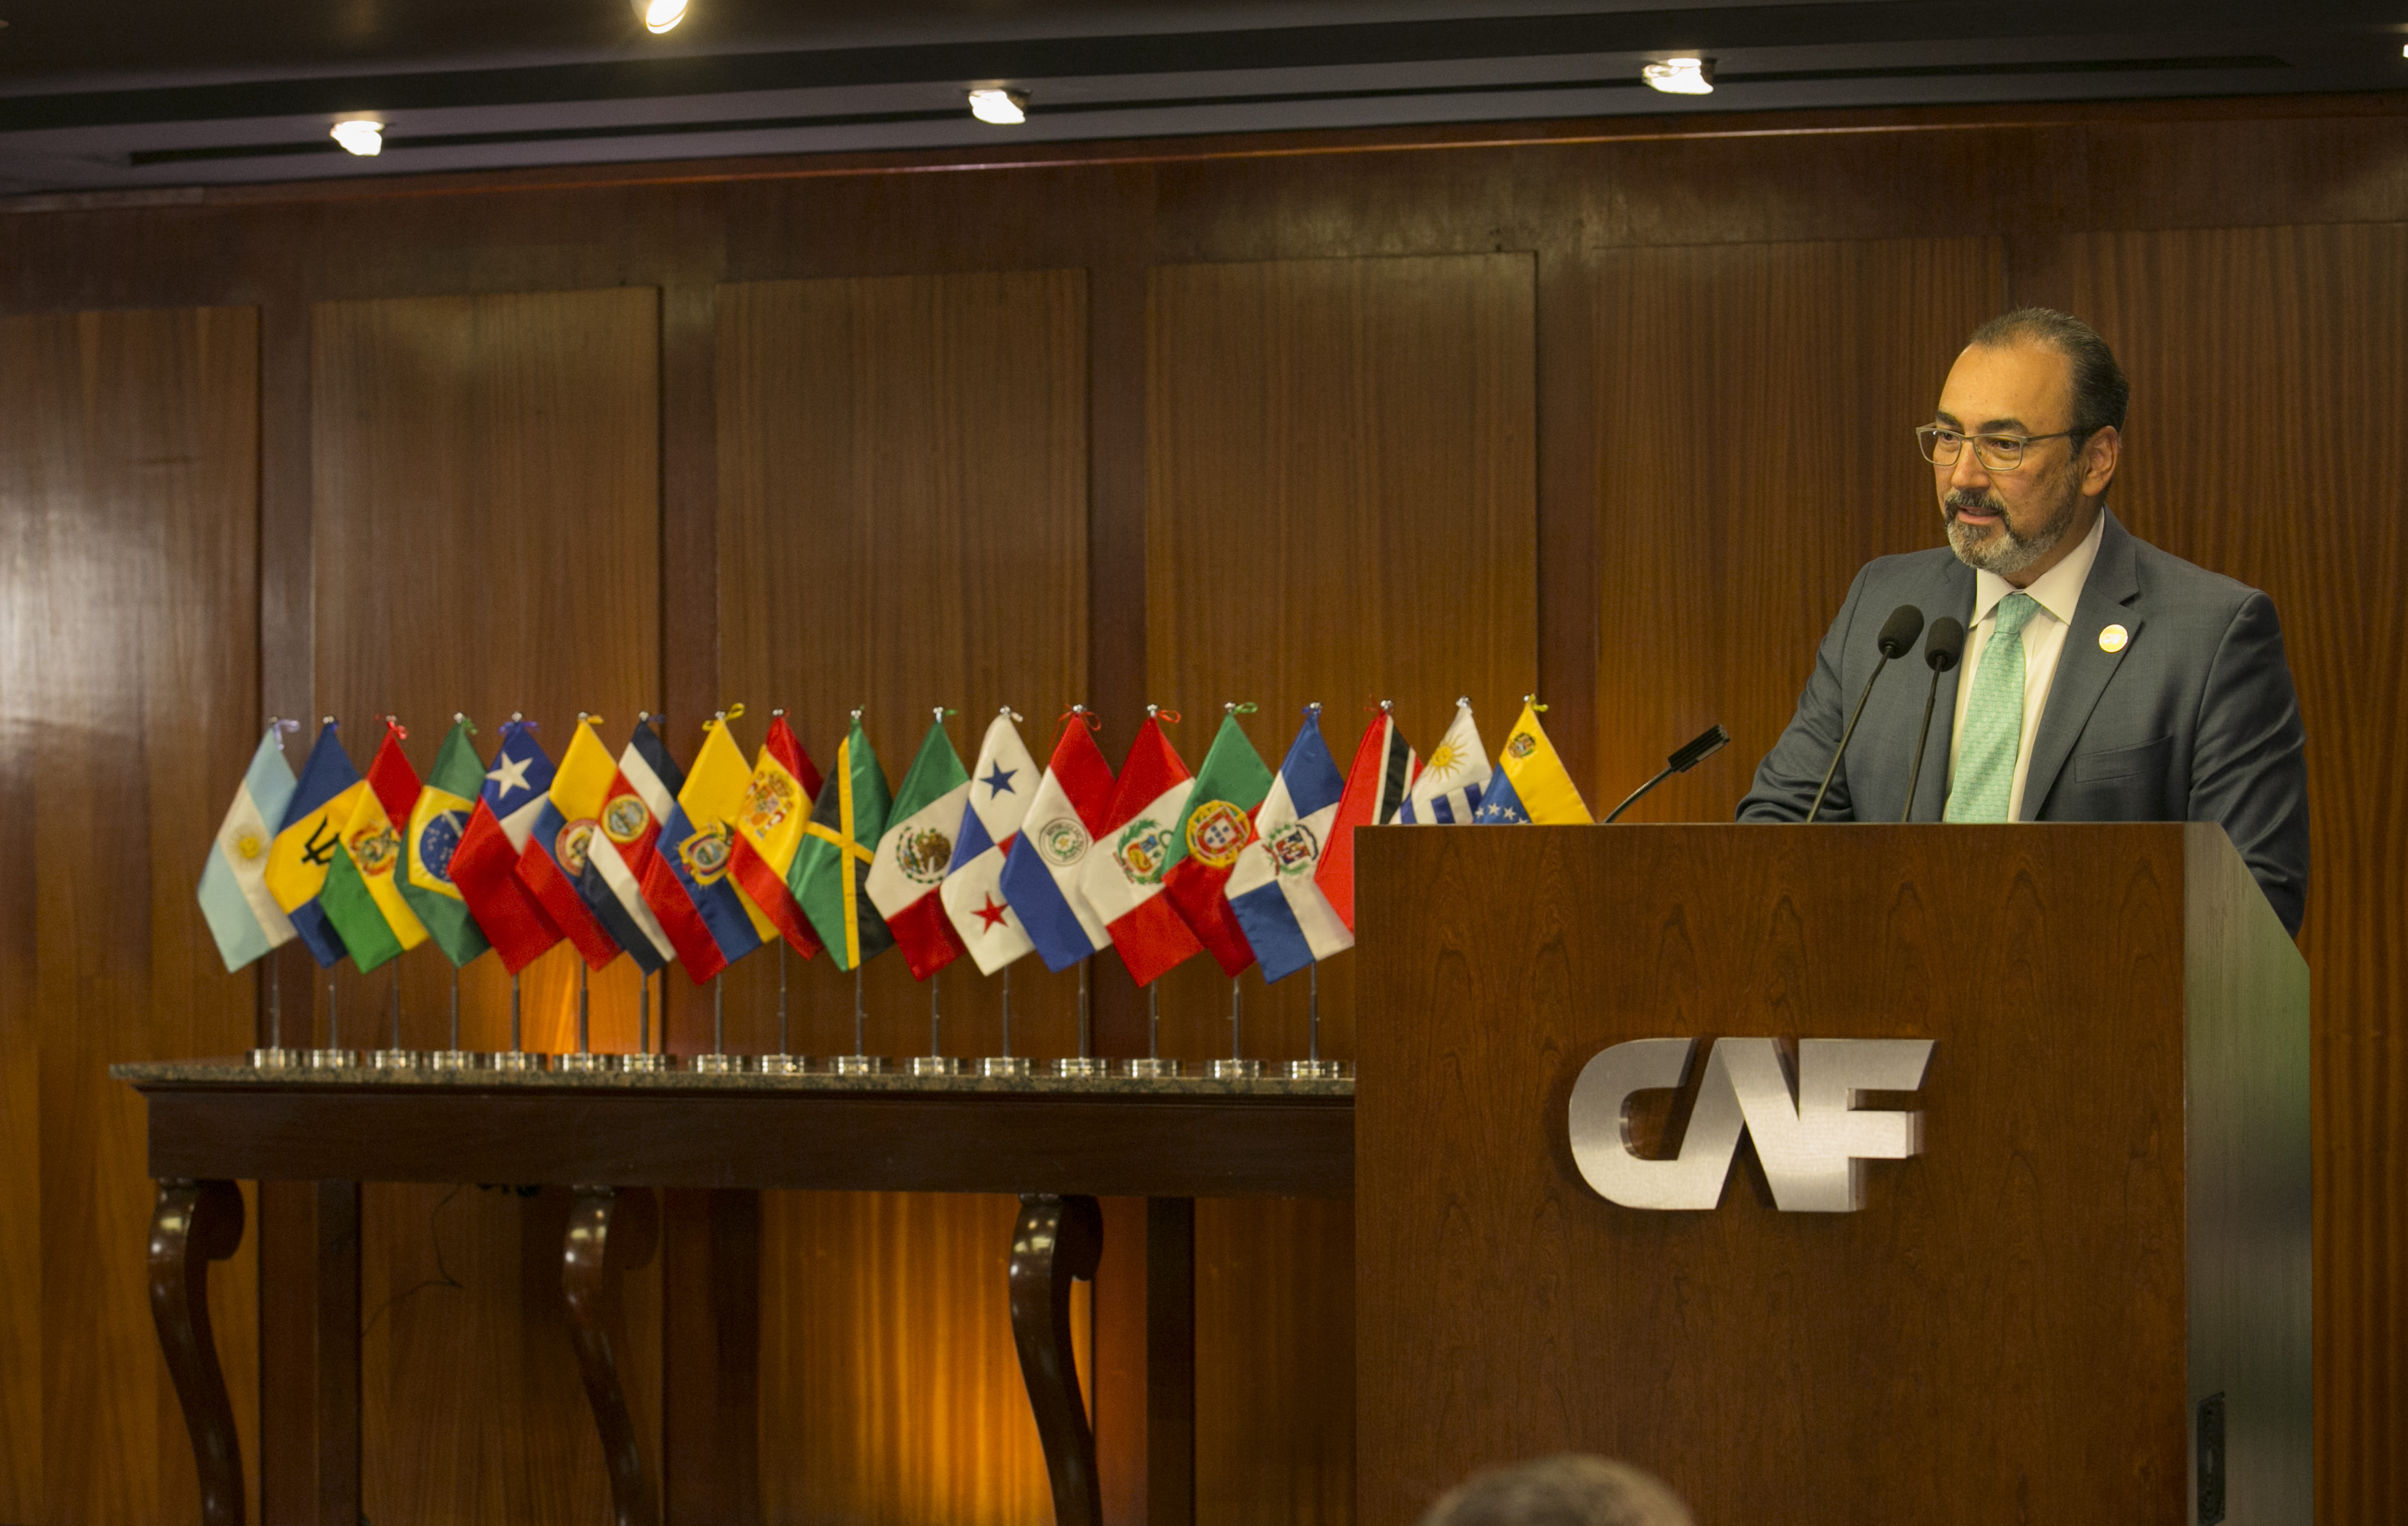 CAF llama a una mayor voluntad política para la integración latinoamericana